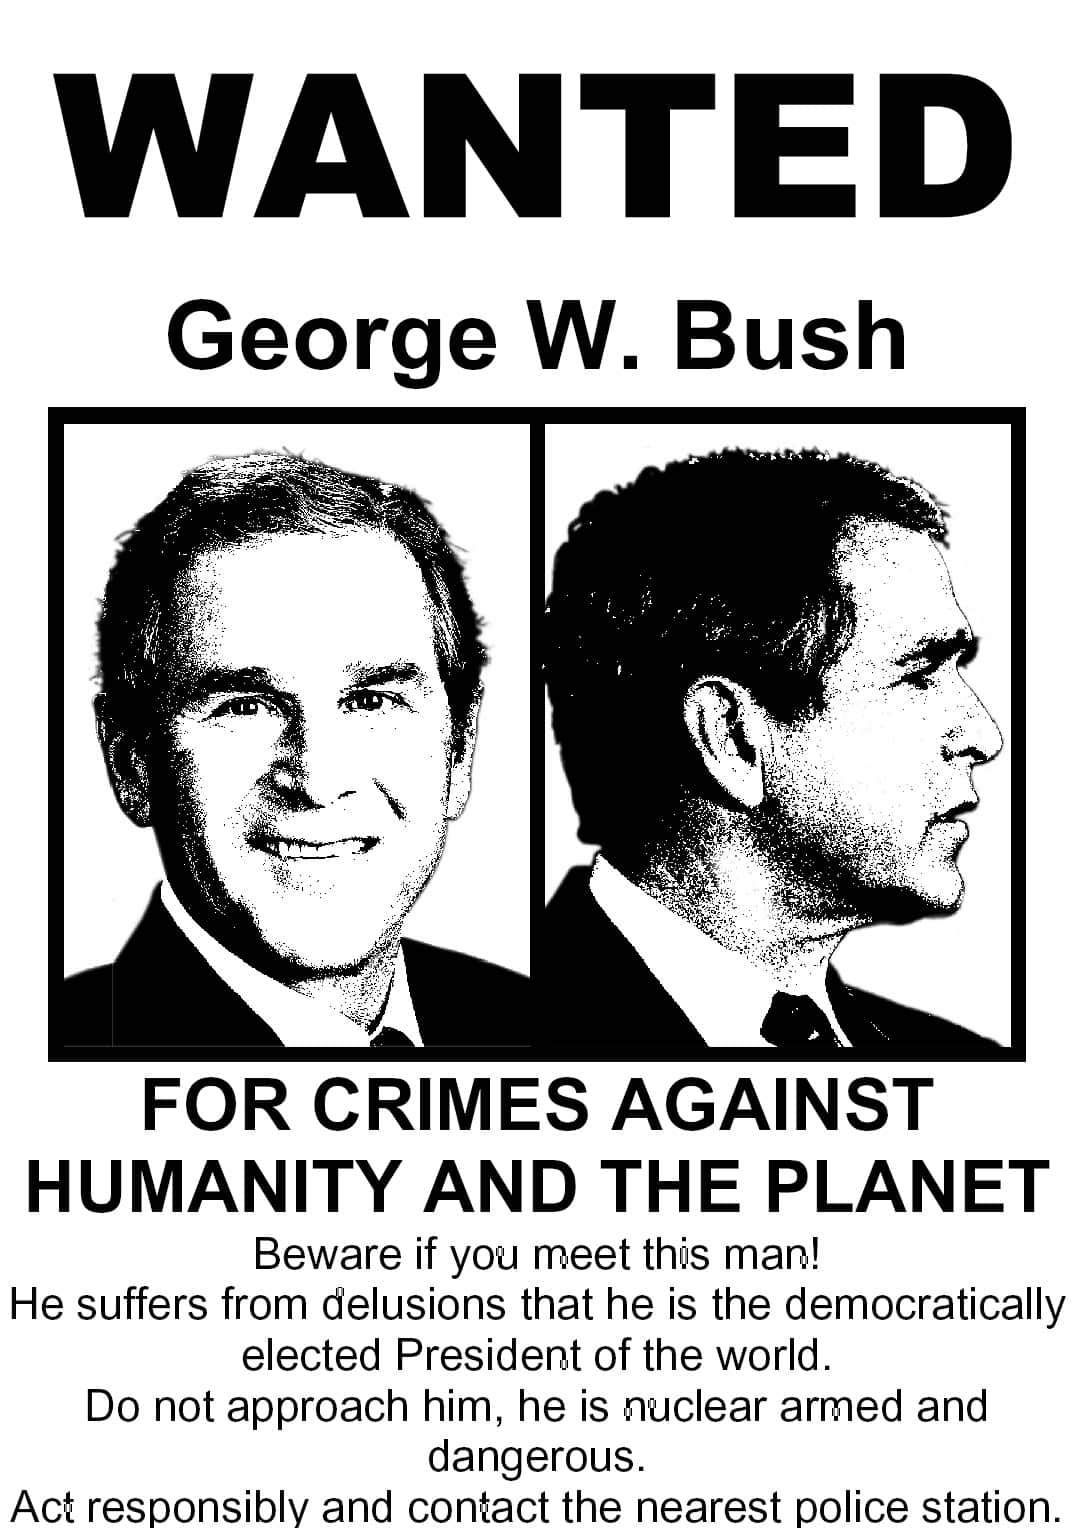 Bush wanted poster